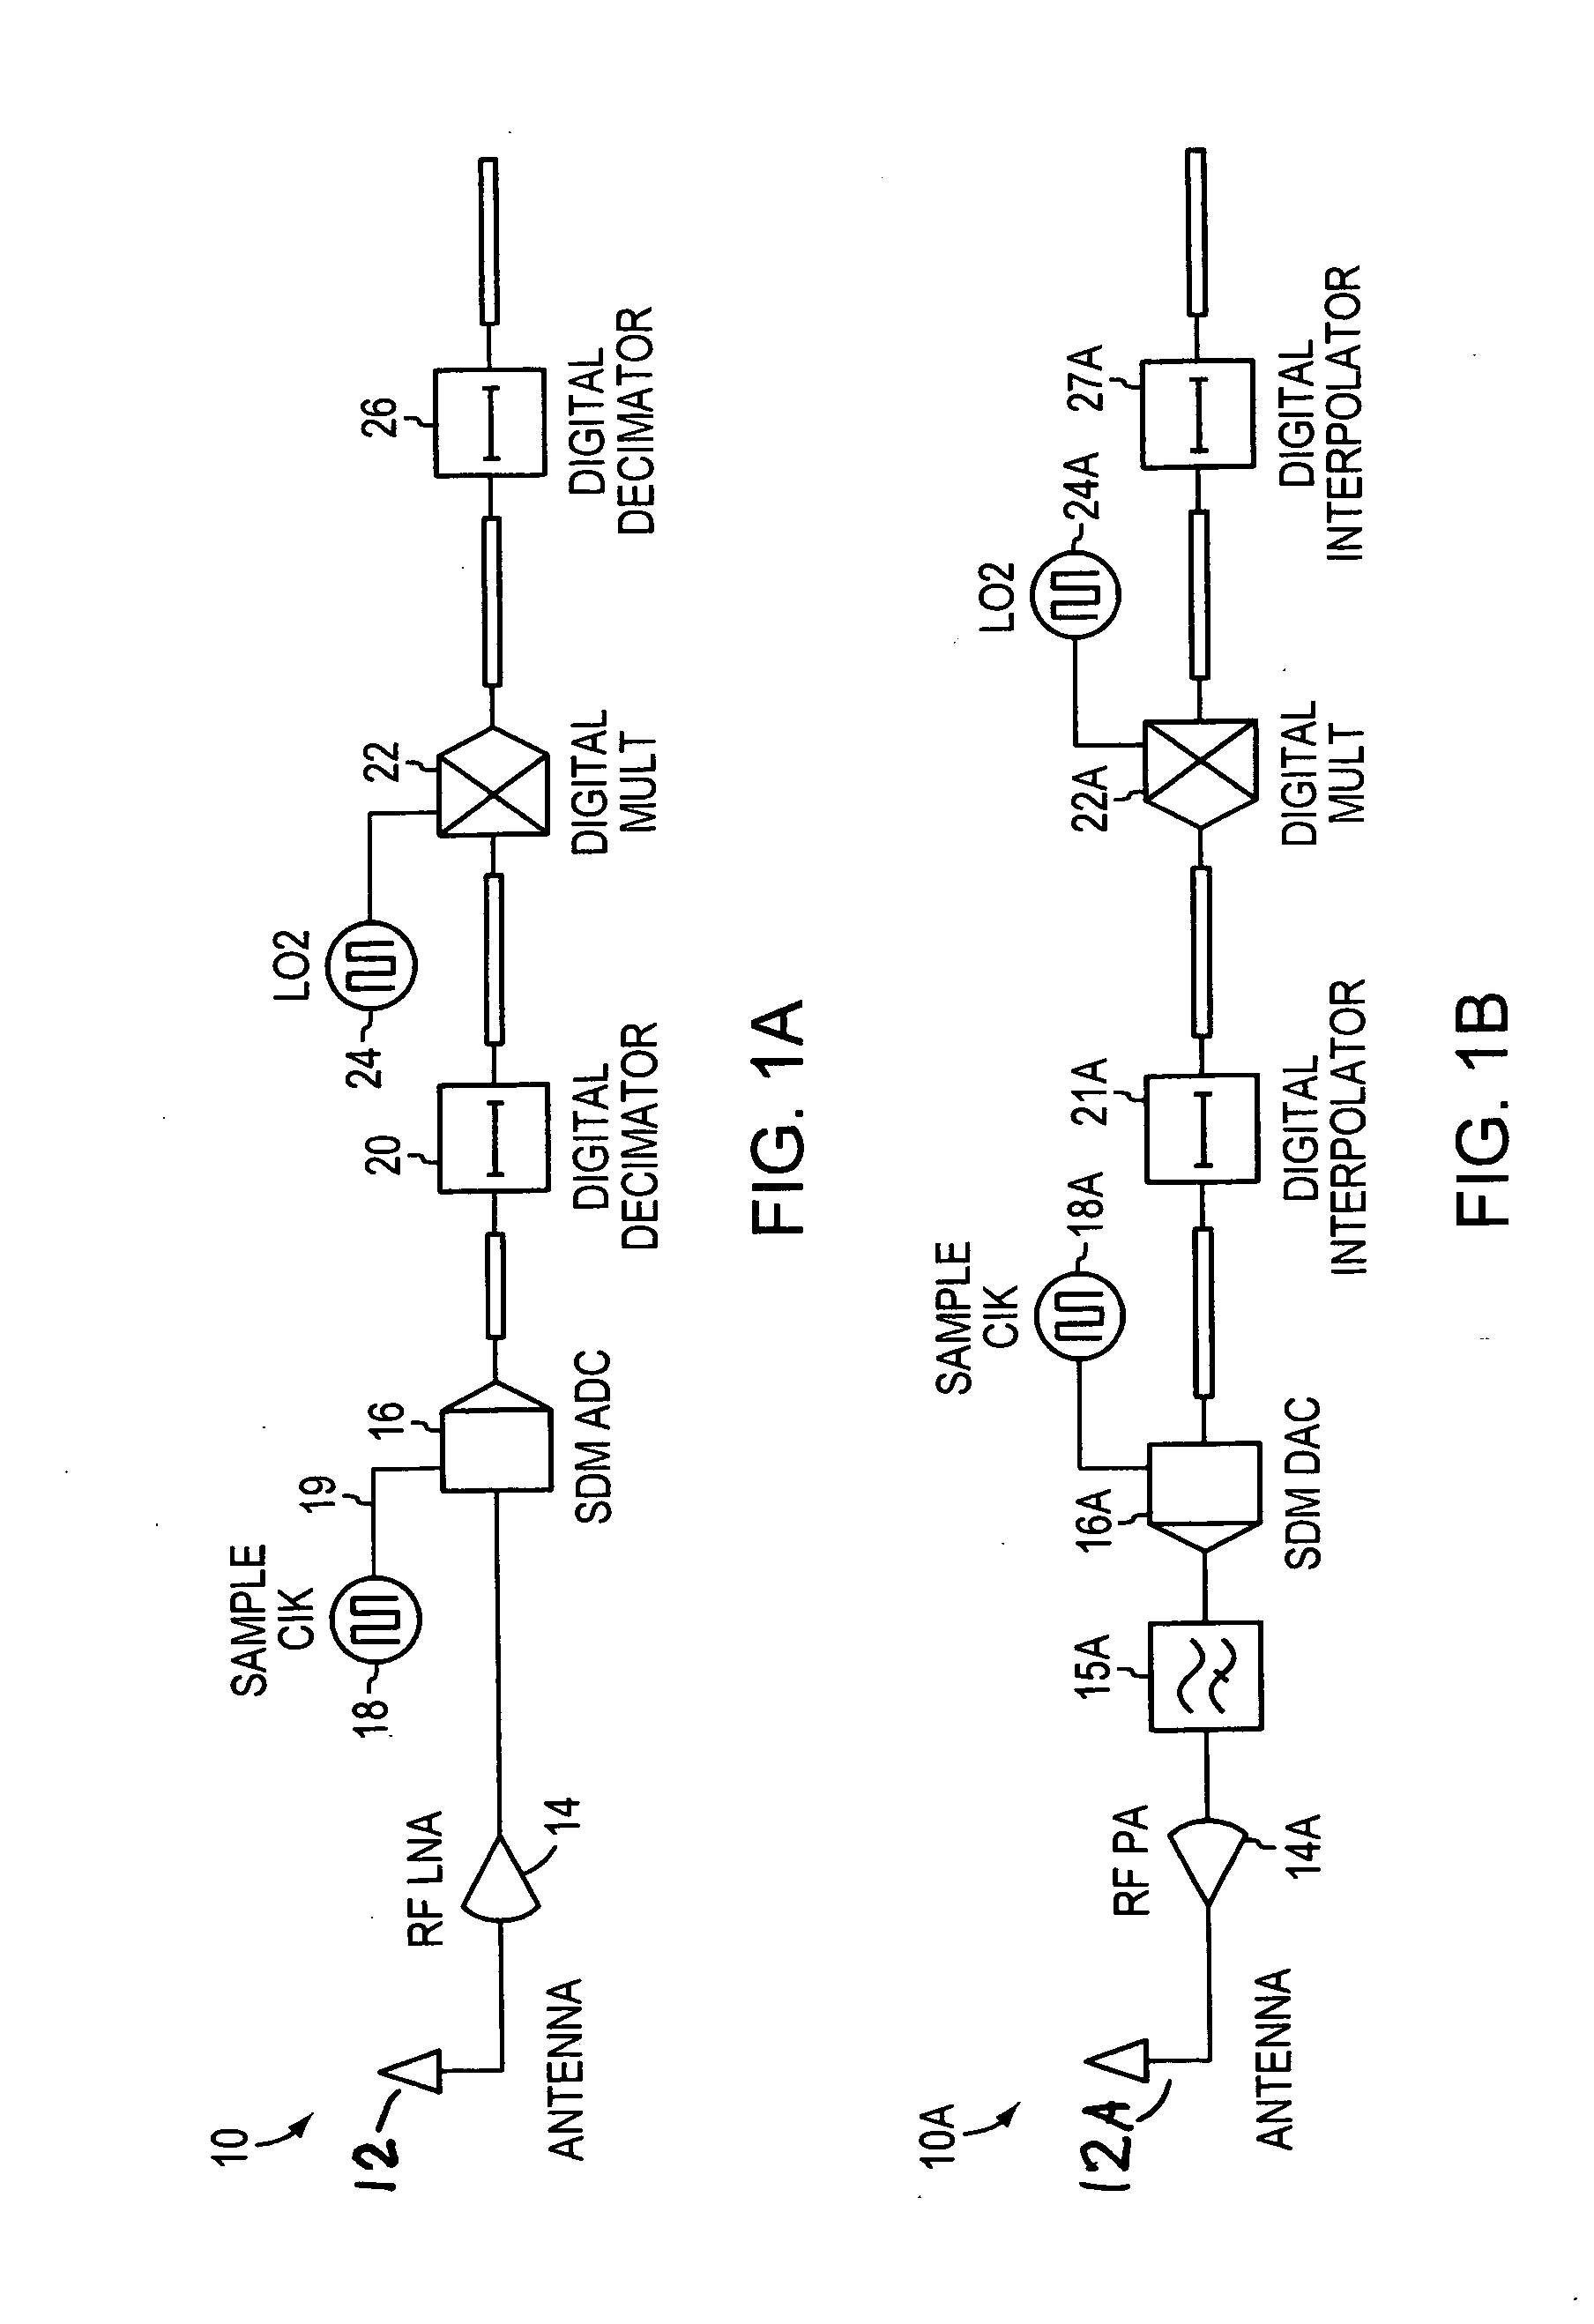 Hybrid heterodyne transmitters and receivers